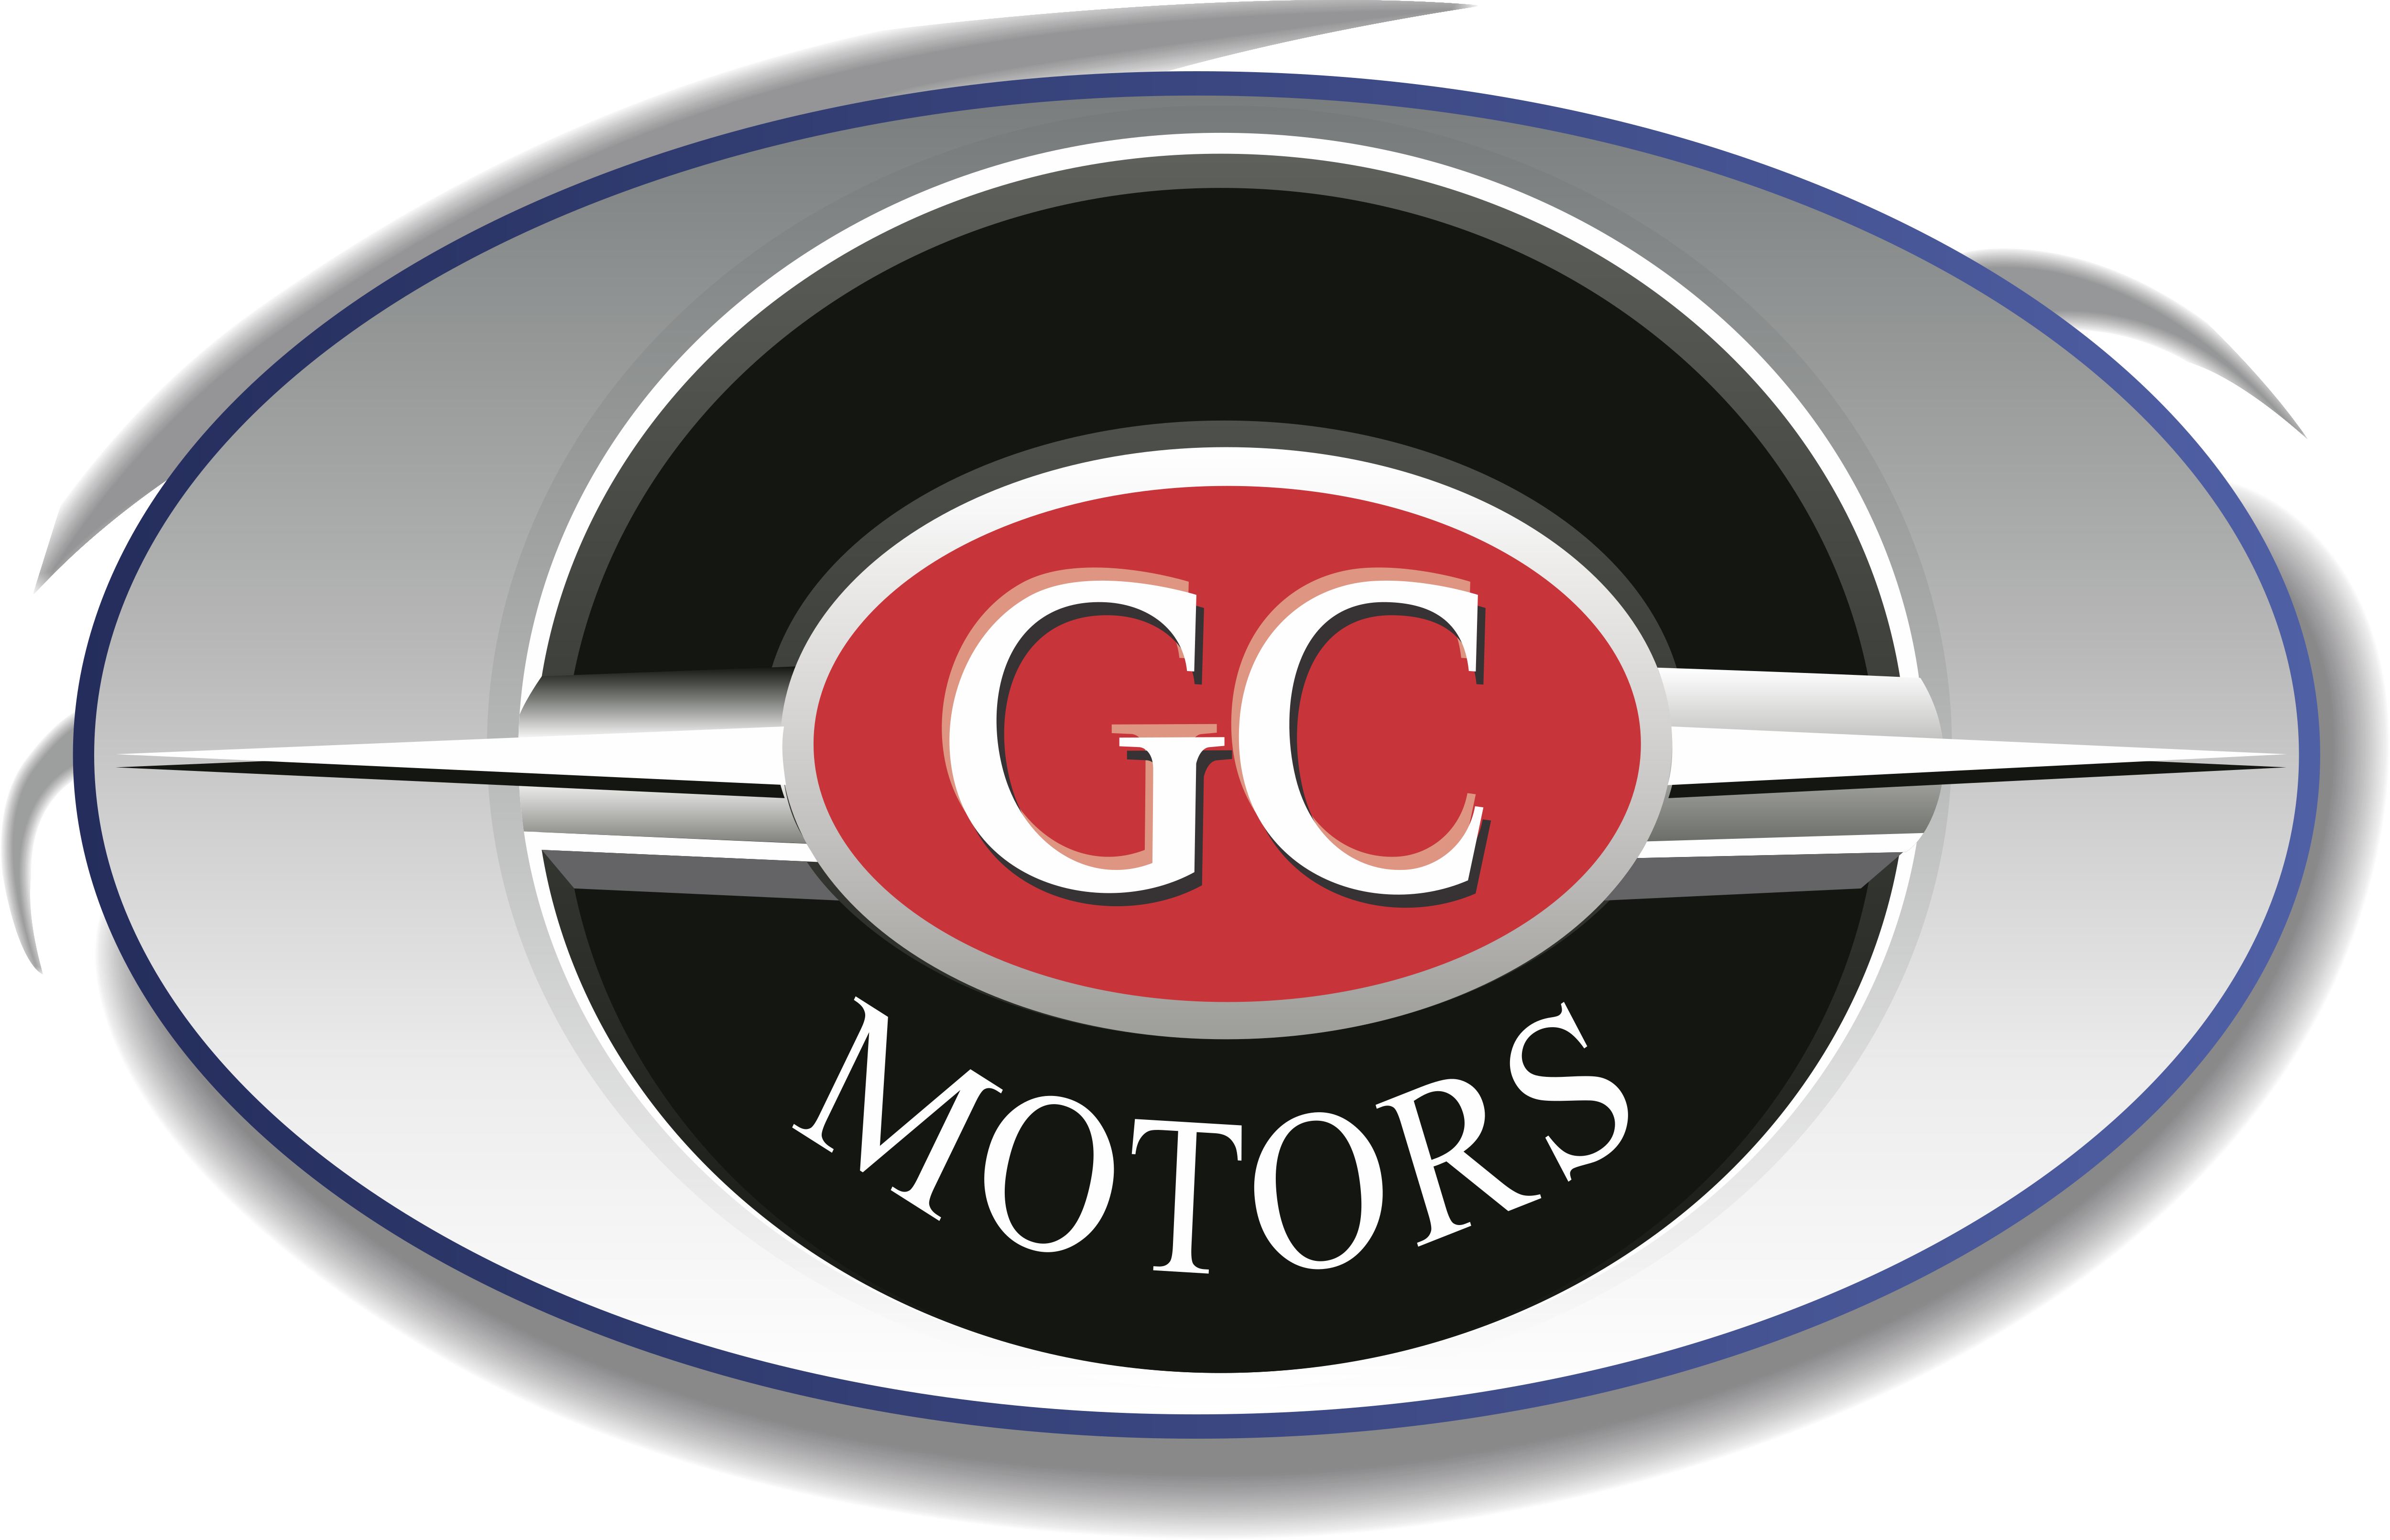 GC Motors  Logos  Download